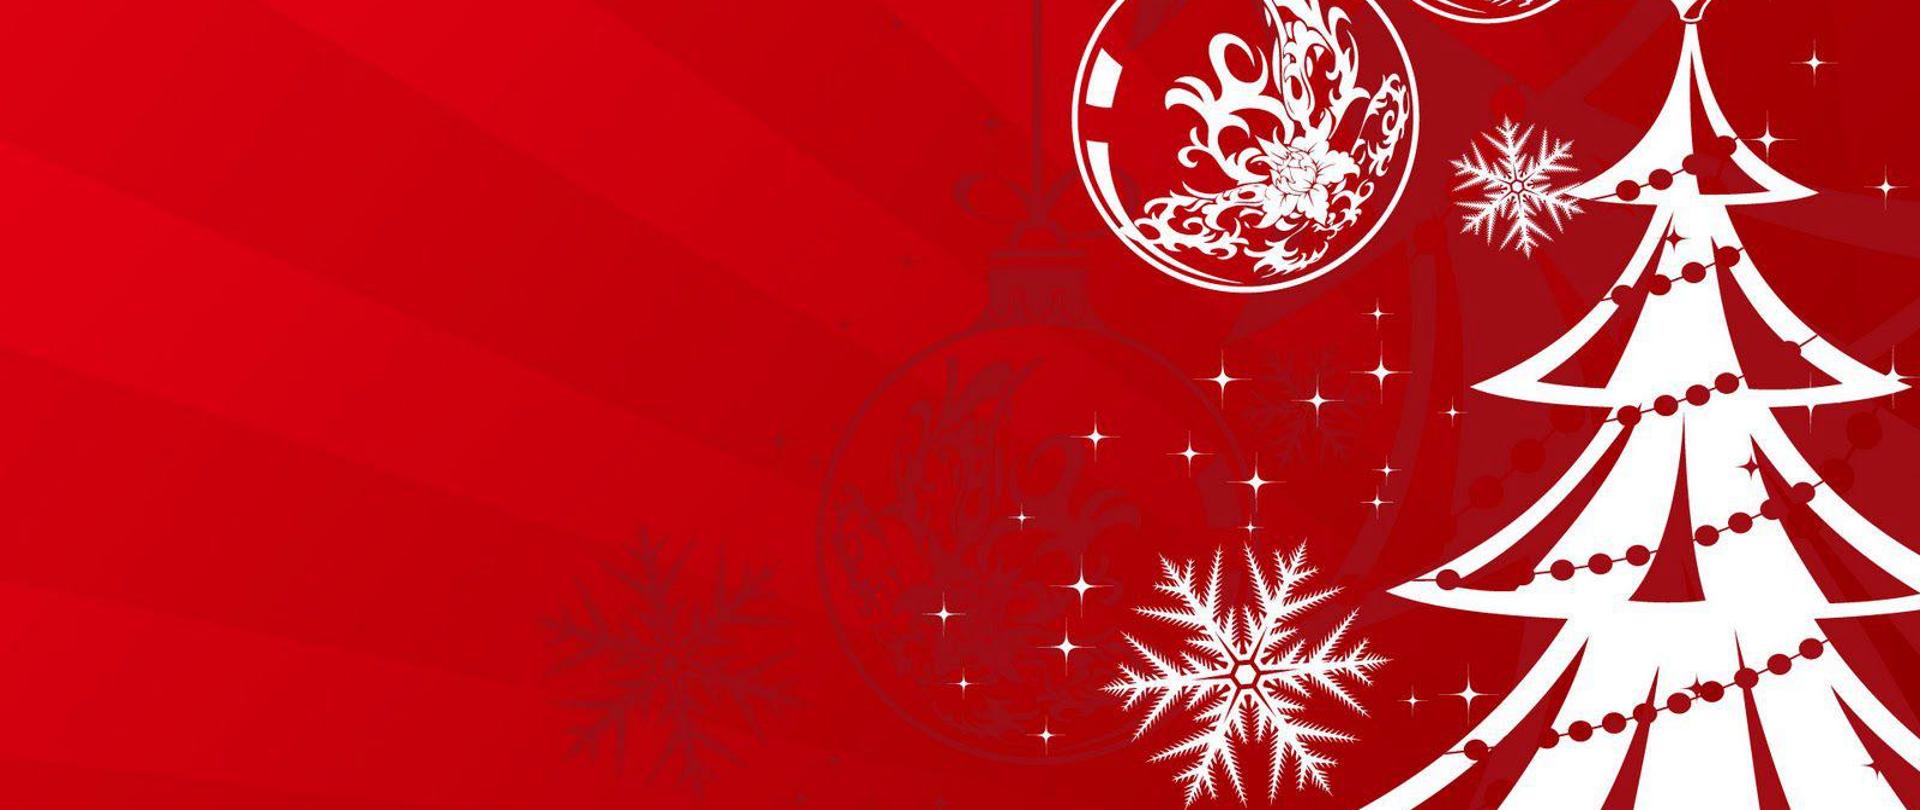 Obrazek przedstawia grafikę świąteczną - na czerwonym tle biała choinka, płatek śniegu, bombki.